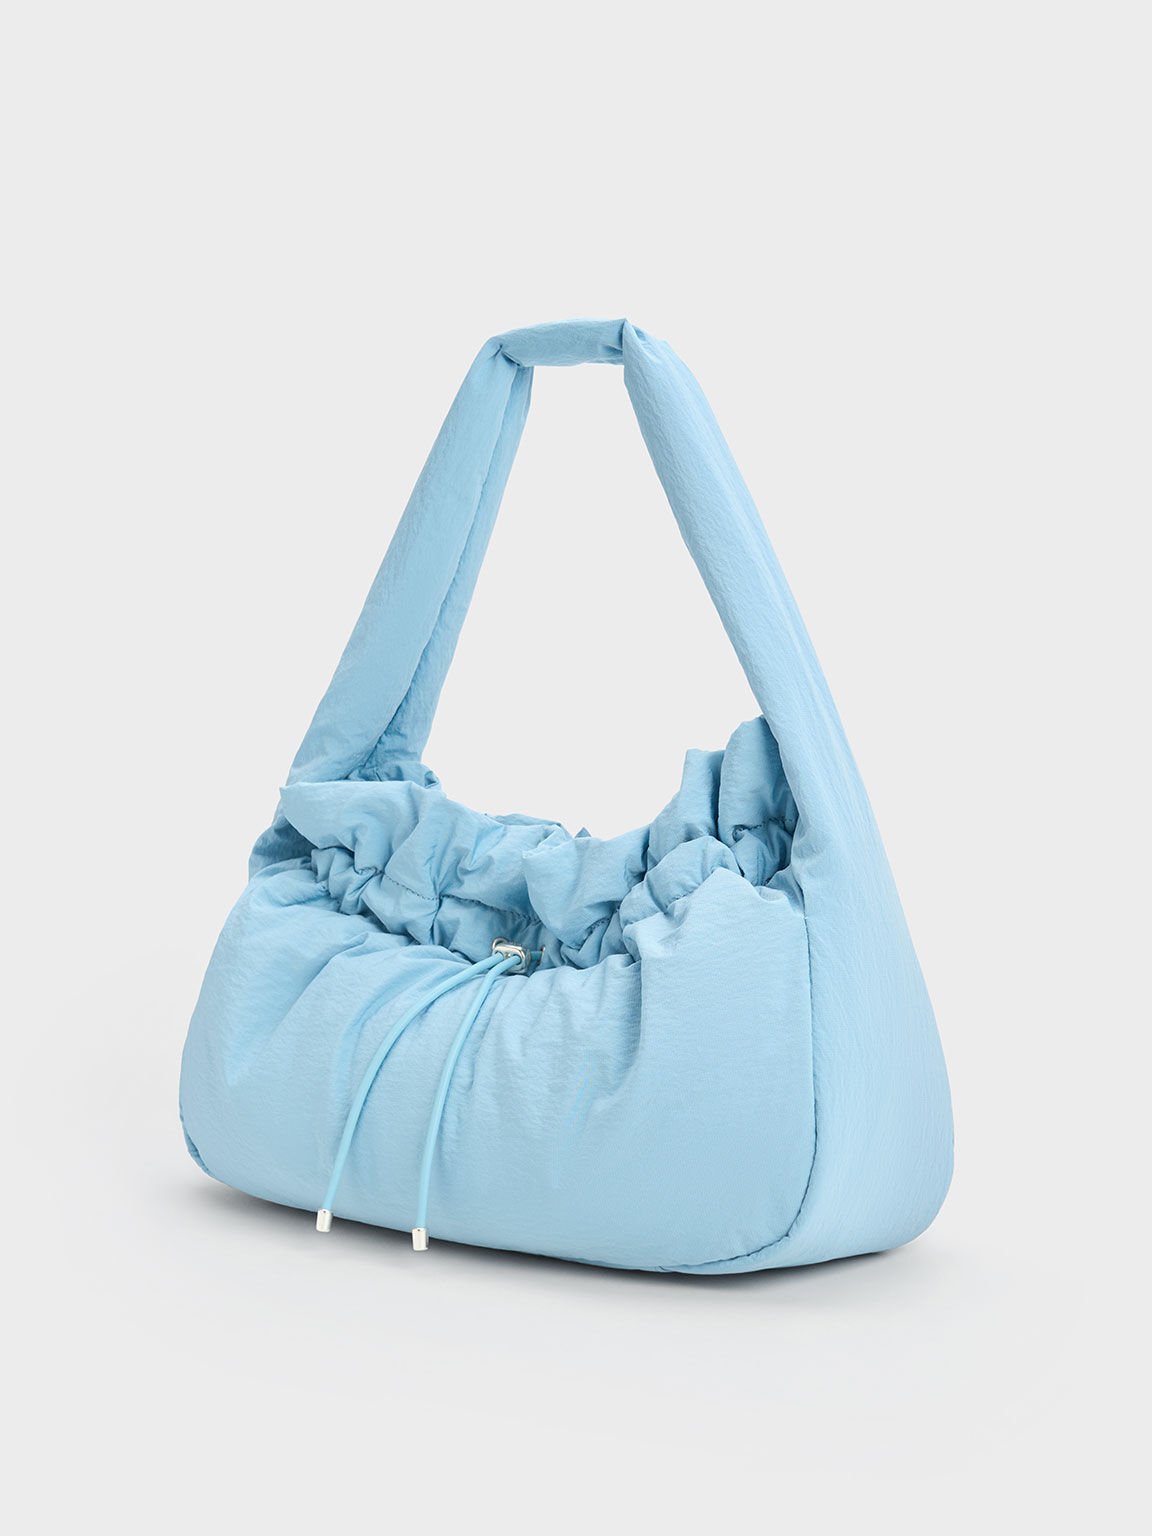 Ruched Hobo Bag, Light Blue, hi-res